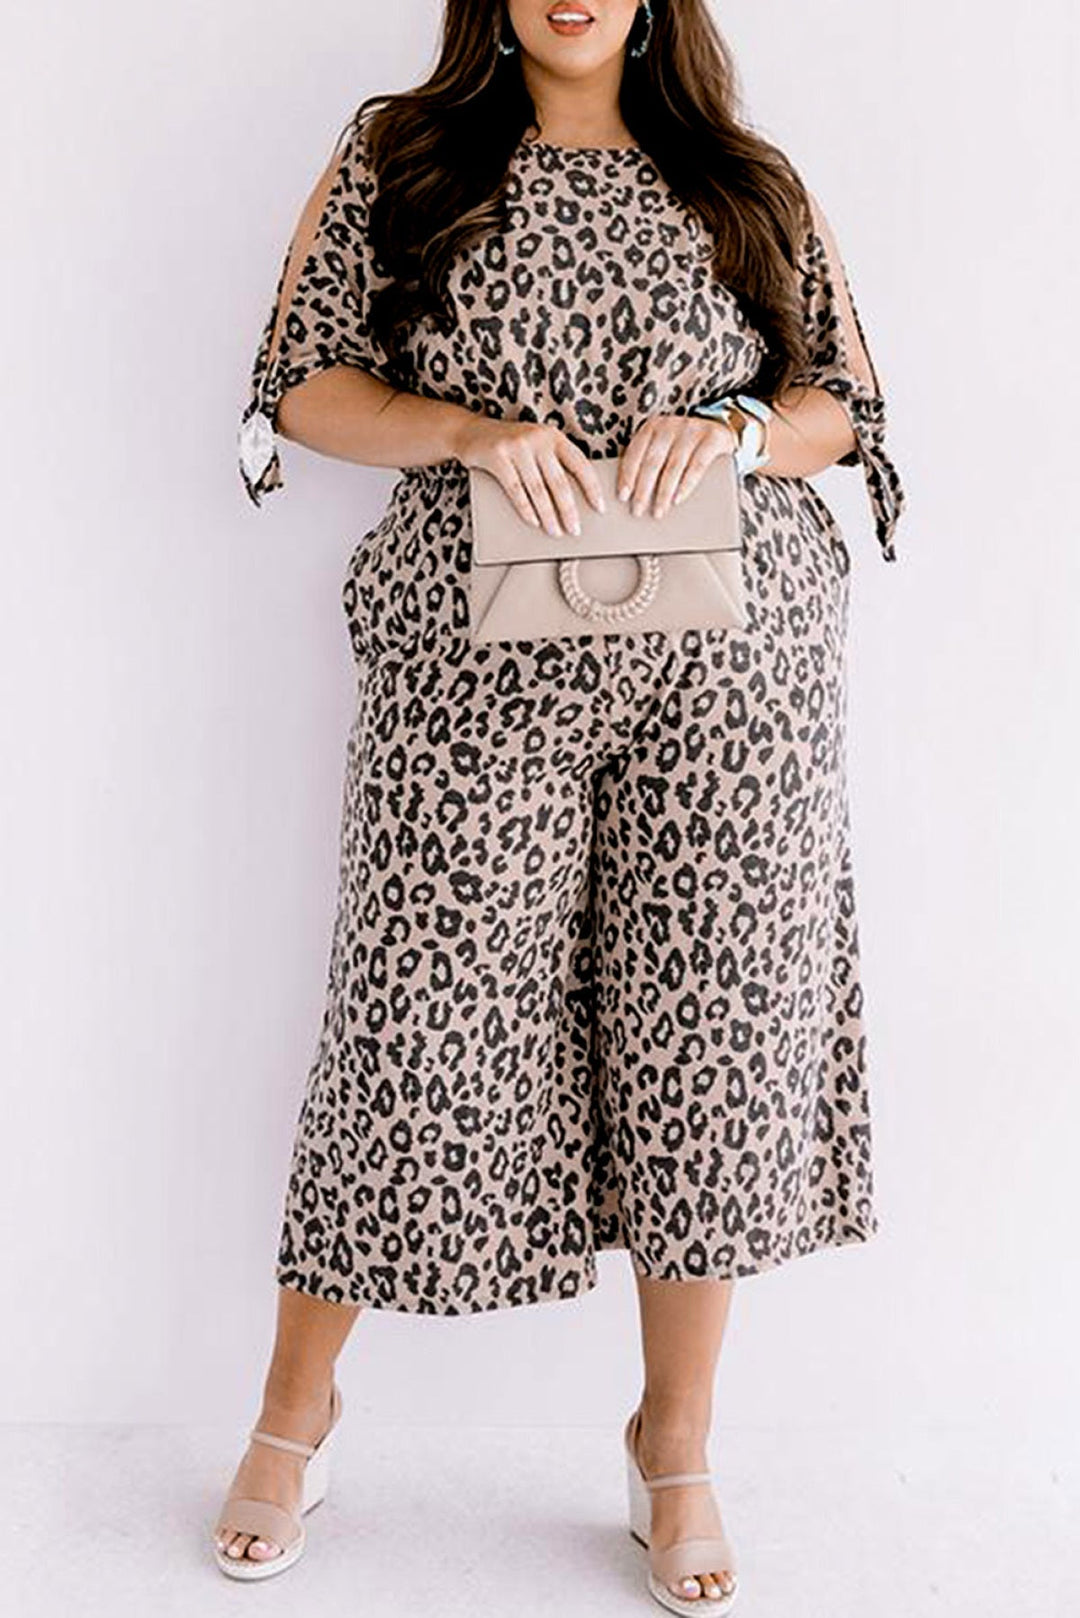 Leopard Half Sleeve Plus Size Jumpsuit